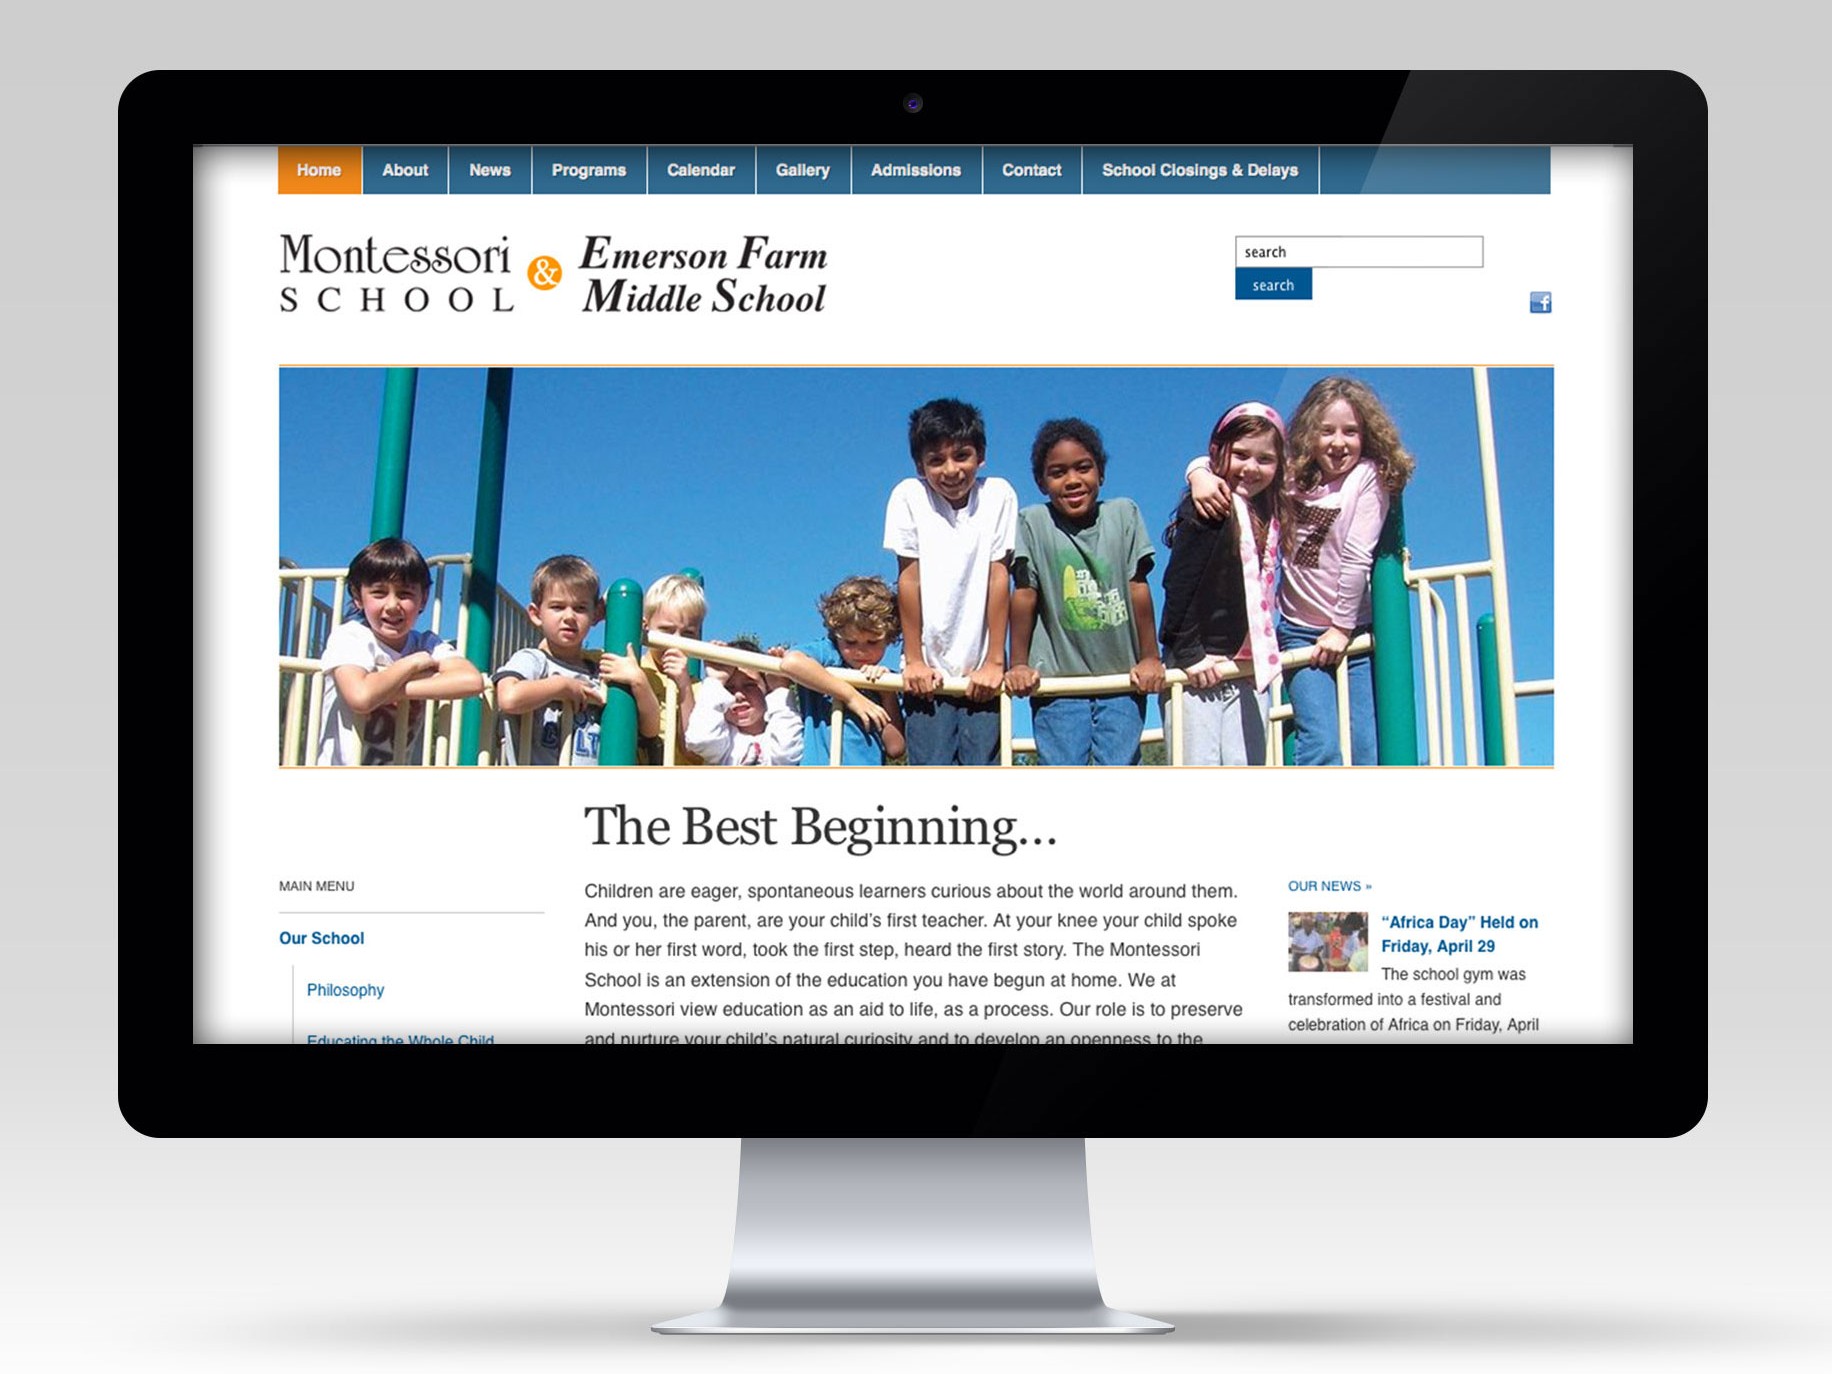 The Montessori School web site